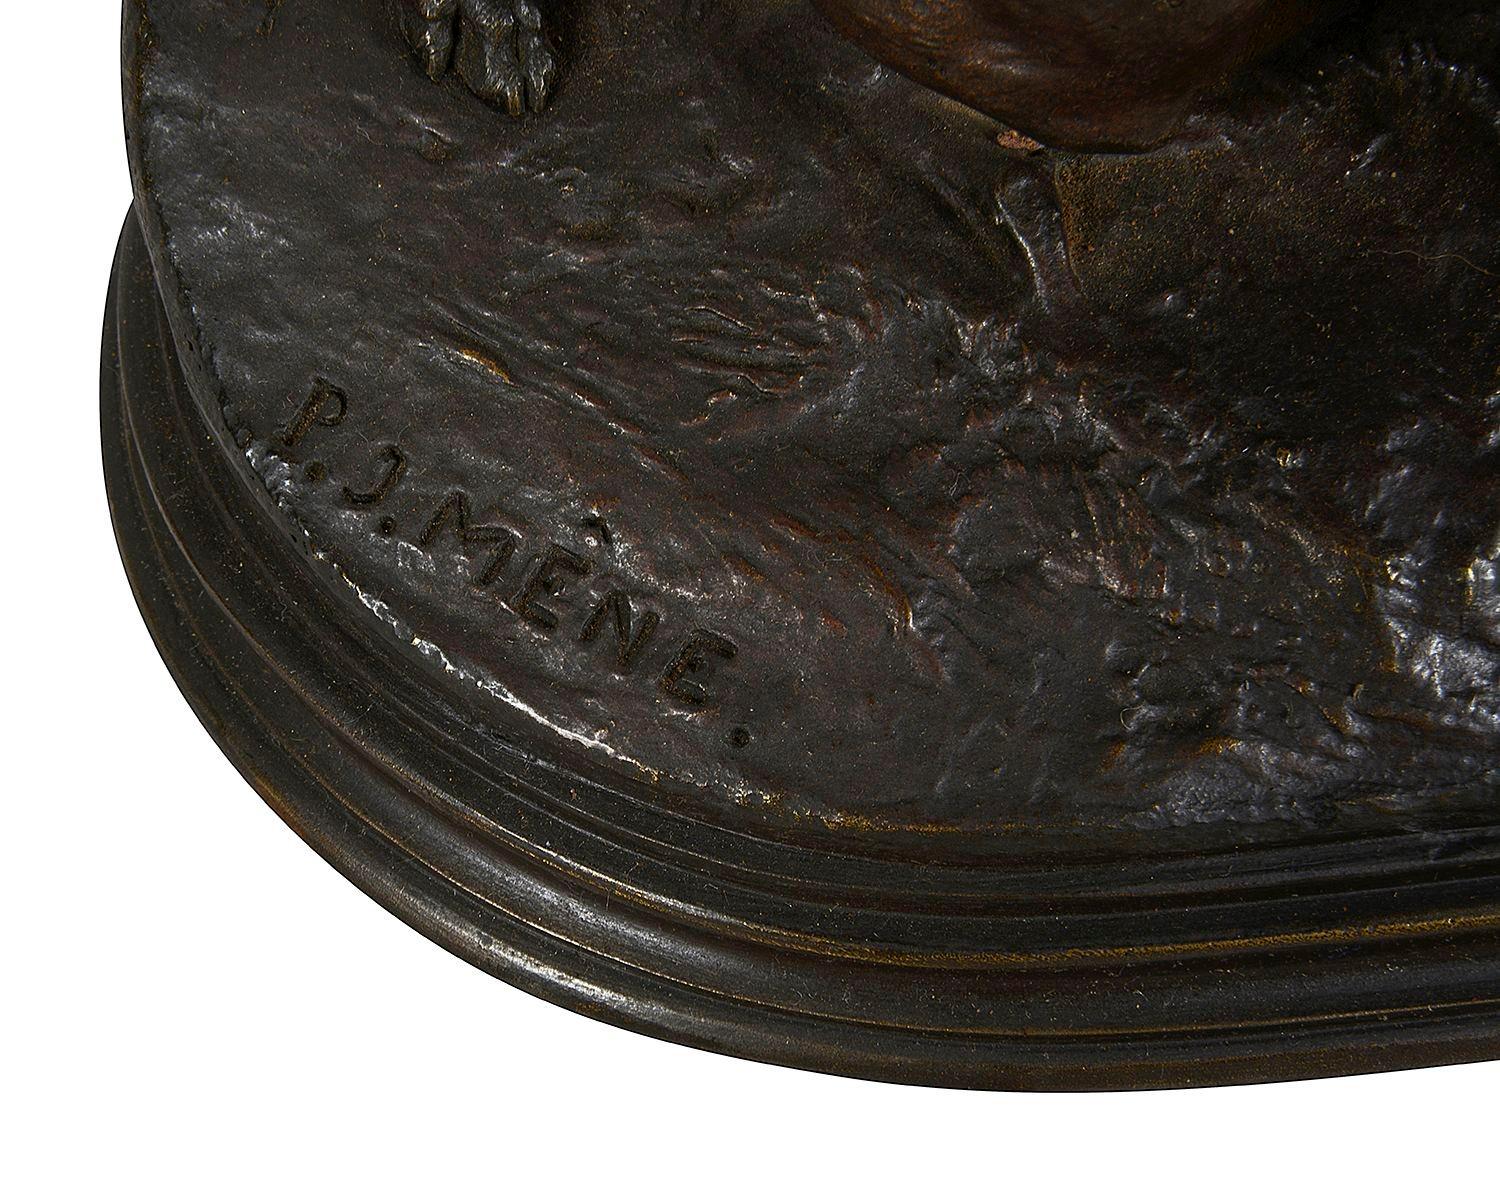 Groupe en bronze du XIXe siècle représentant trois chiens de chasse en train de ferrer. Ils présentent une bonne patine d'origine.
Signé ; Pierre Jules Mene, Français 1810-79

62714 CNKZ